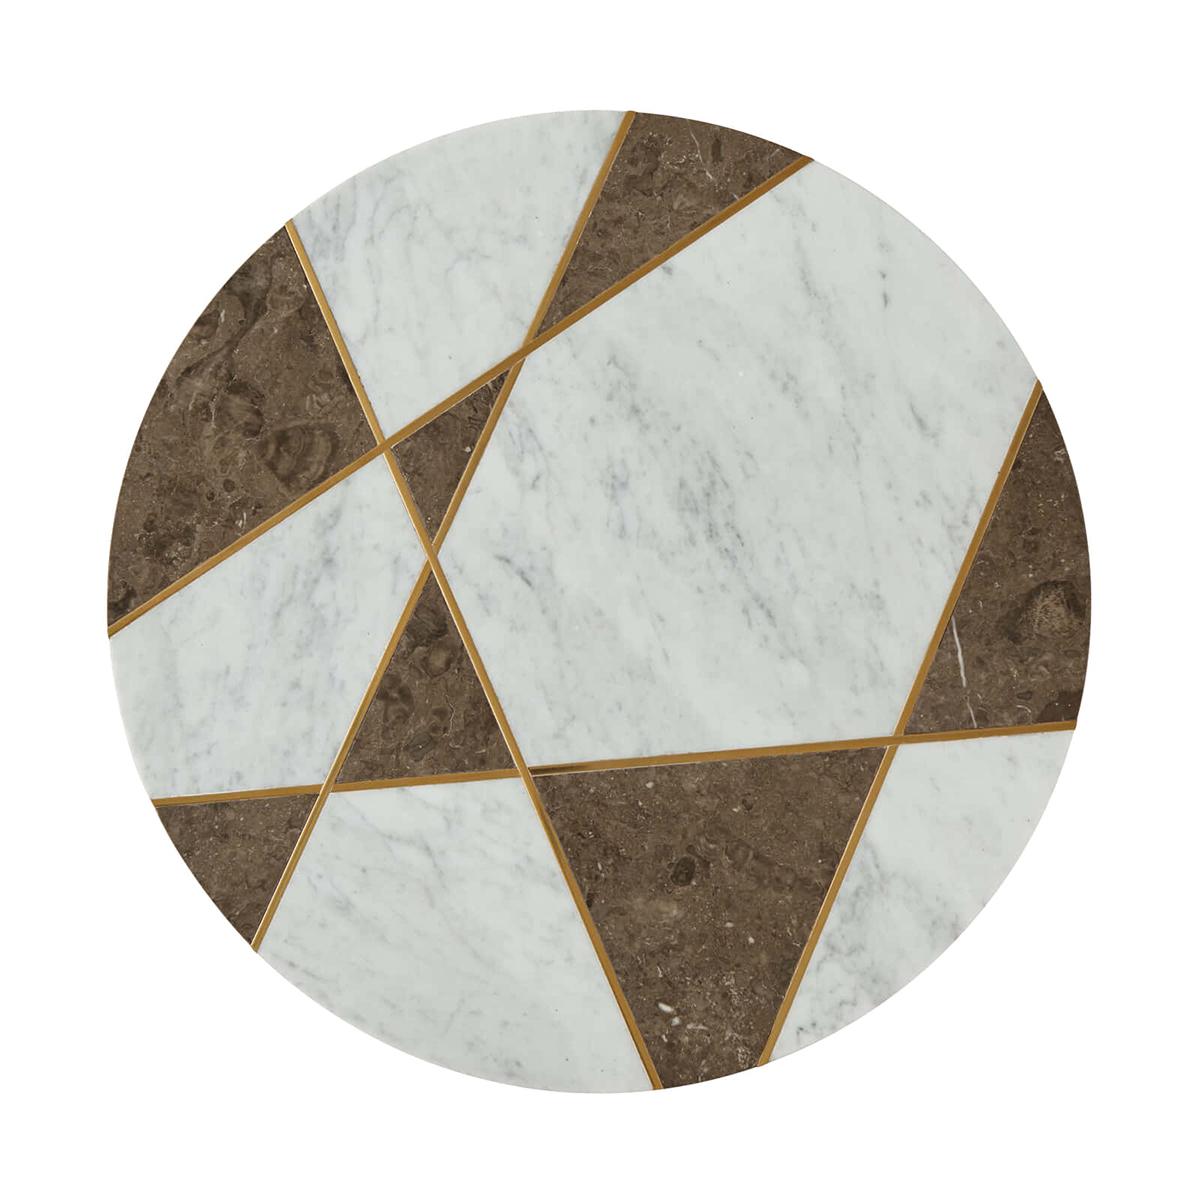 Moderner geometrischer Beistelltisch mit einer runden Platte aus olivgrauem und weißem Bianco Cararra-Marmor und sich kreuzenden Relieflinien aus Messing auf einem abgewinkelten dreiteiligen Stahlsockel in Messingoptik.

Abmessungen: 24